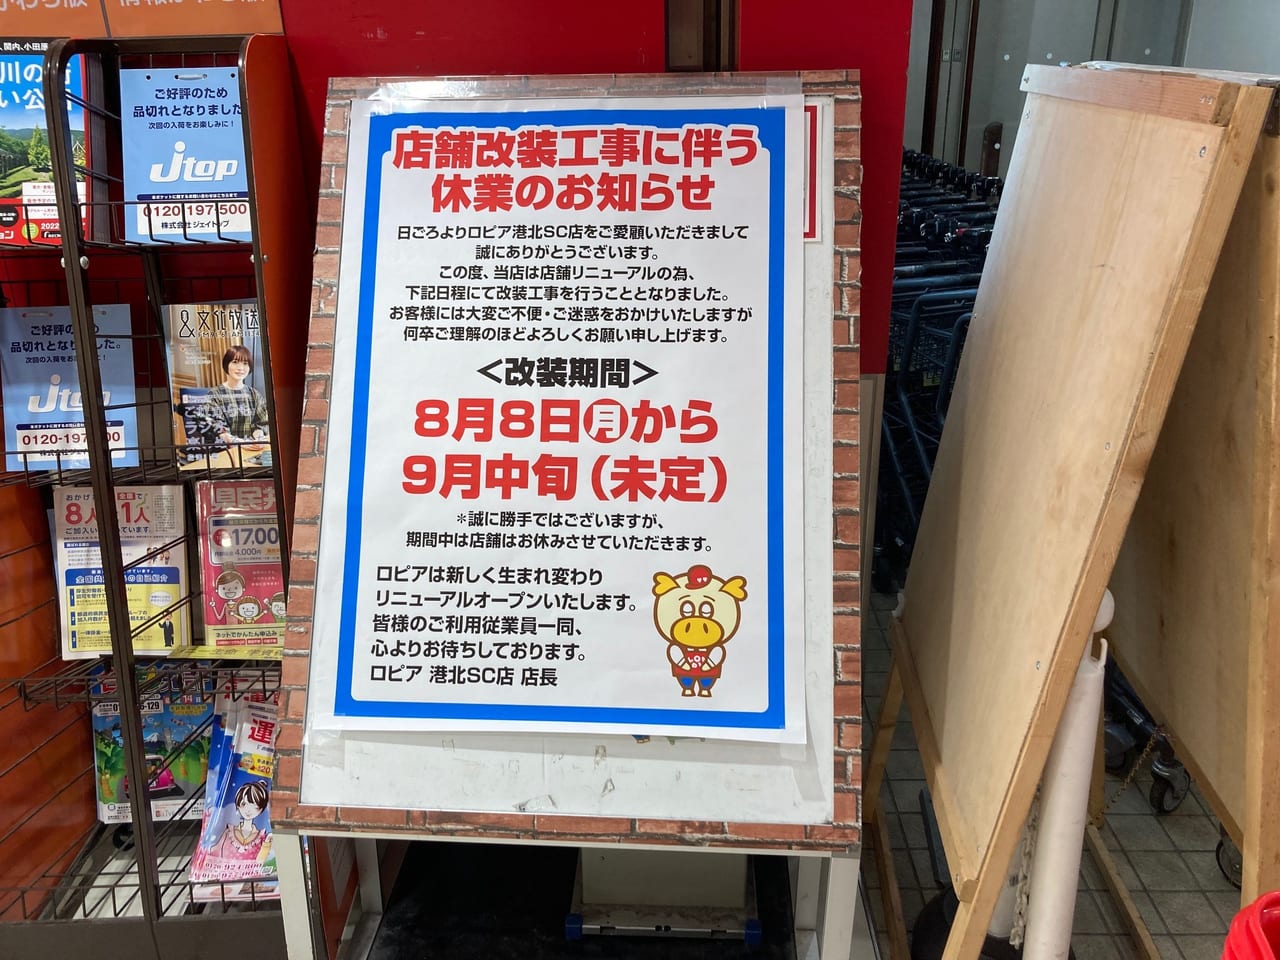 横浜市都筑区 港北tokyu S C のスーパー Lopia ロピア が 22年8月8日 9月中旬まで店舗改装工事に伴って休業します お買物の際はご注意ください 都筑区 都筑区民ニュース